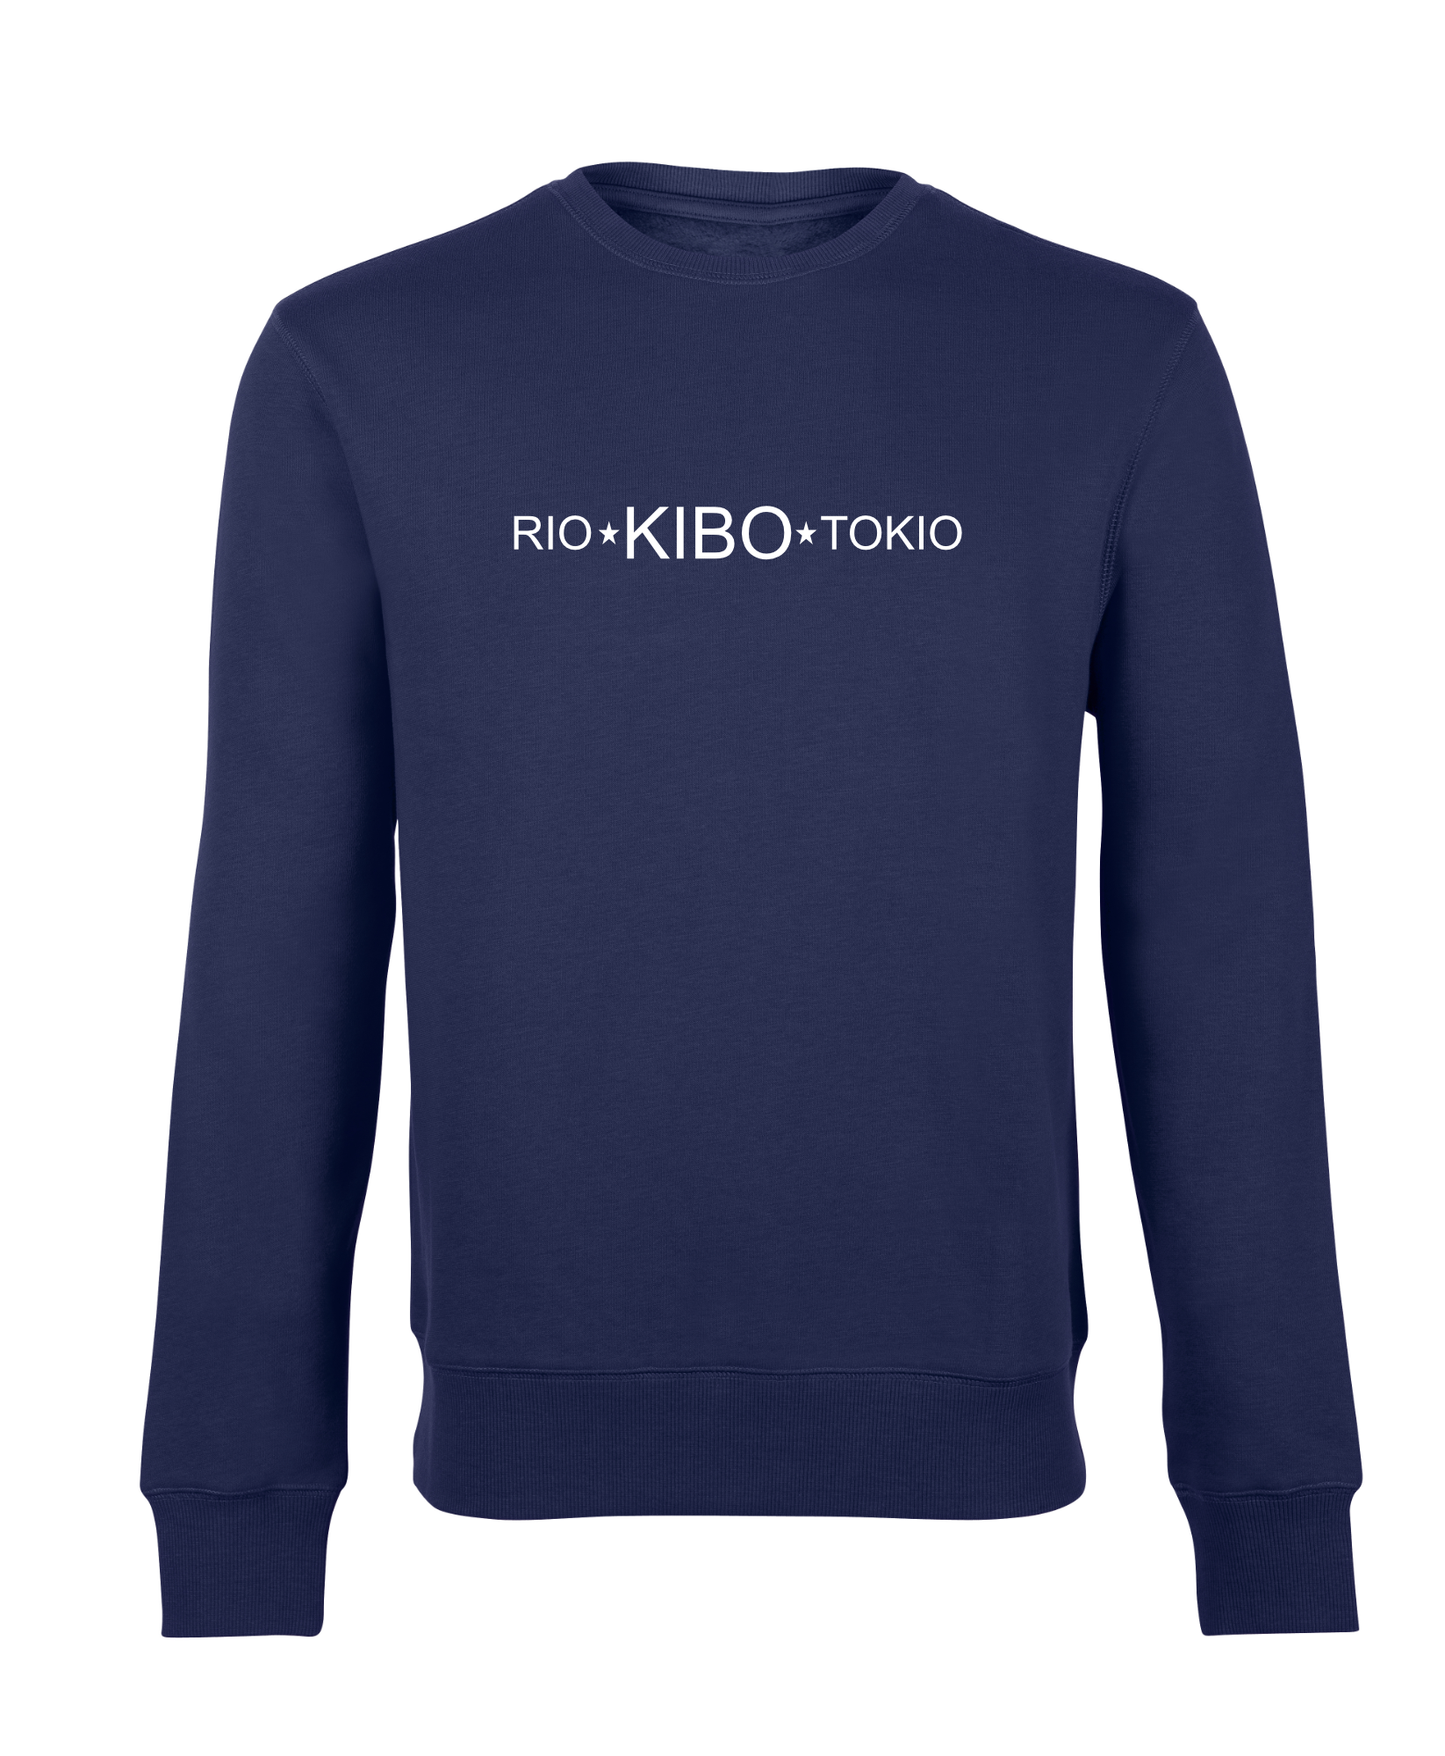 RIO-KIBO-TOKIO pREHmium - Sweatshirts